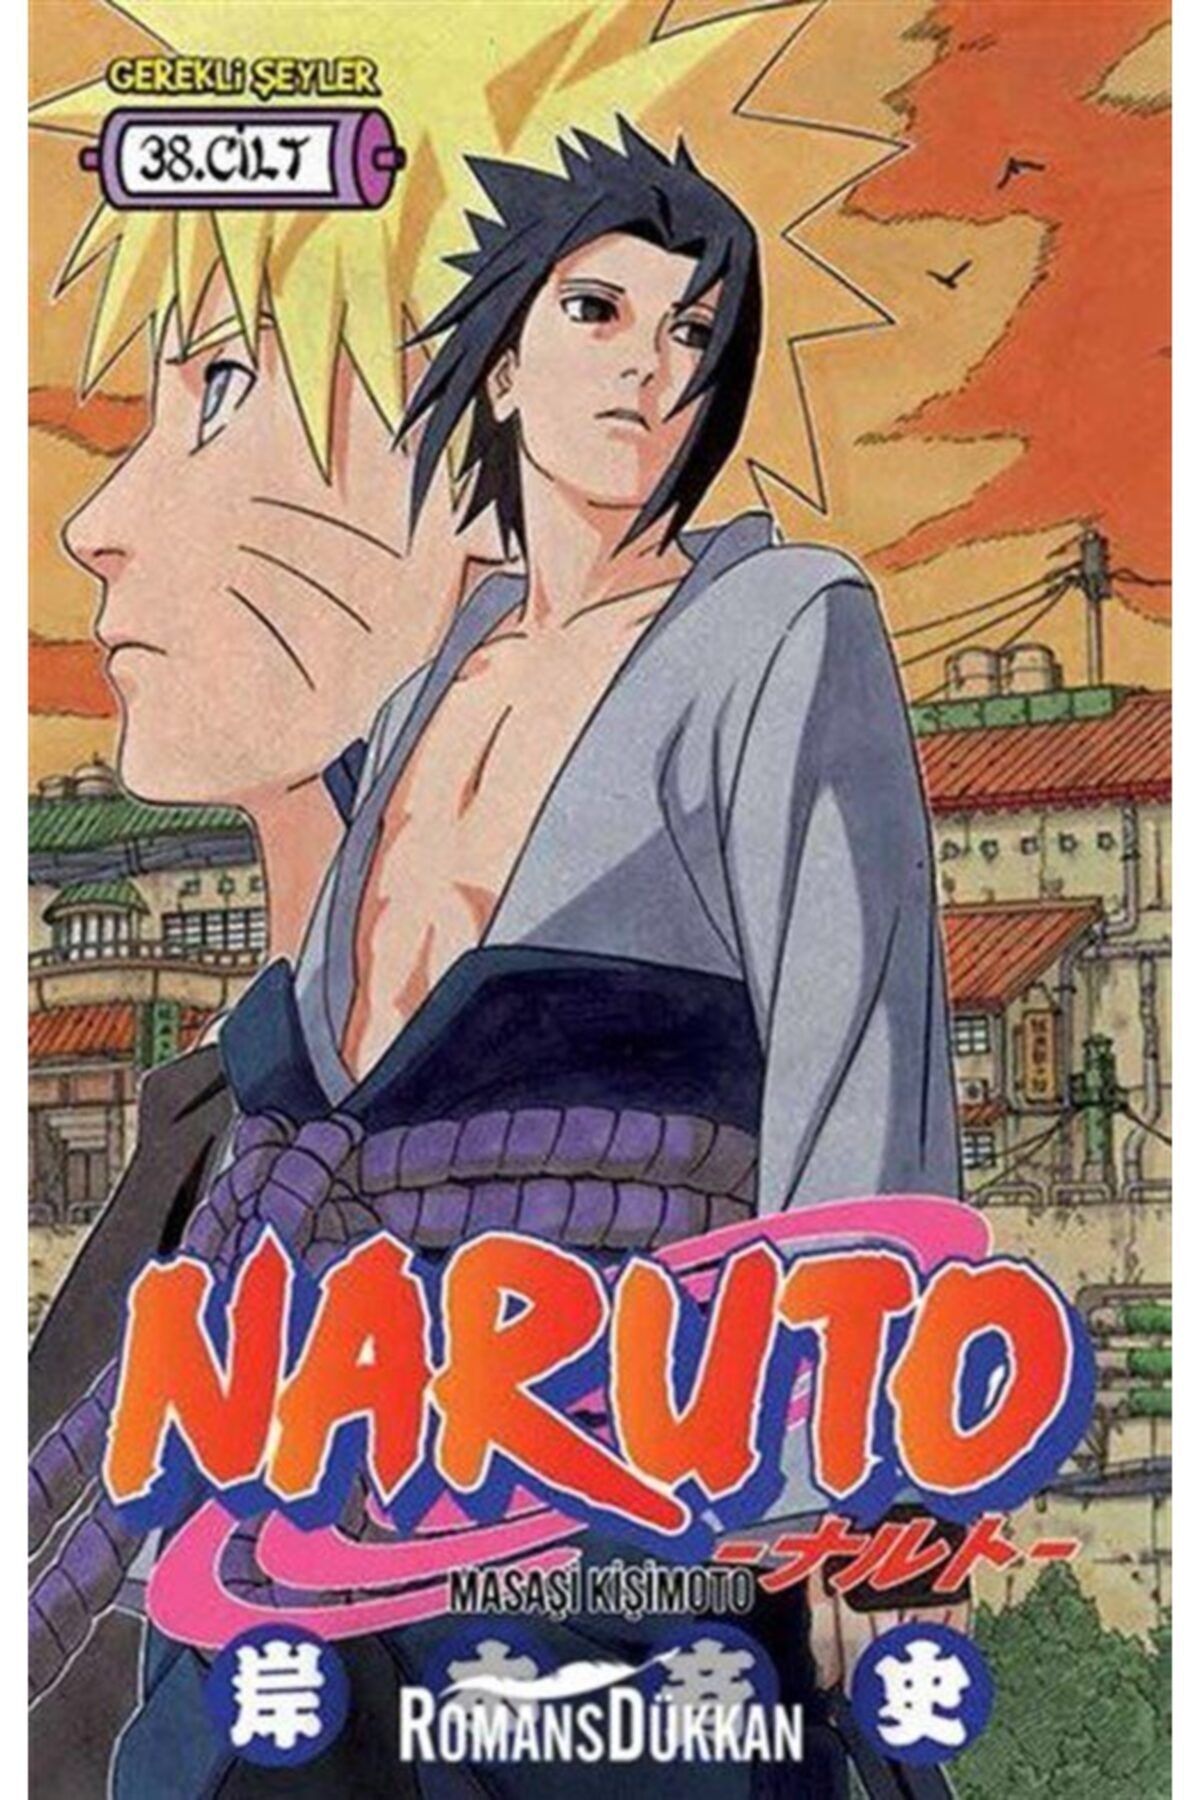 Gerekli Şeyler Yayıncılık Naruto 38. Cilt - - Masaşi Kişimoto Kitabı